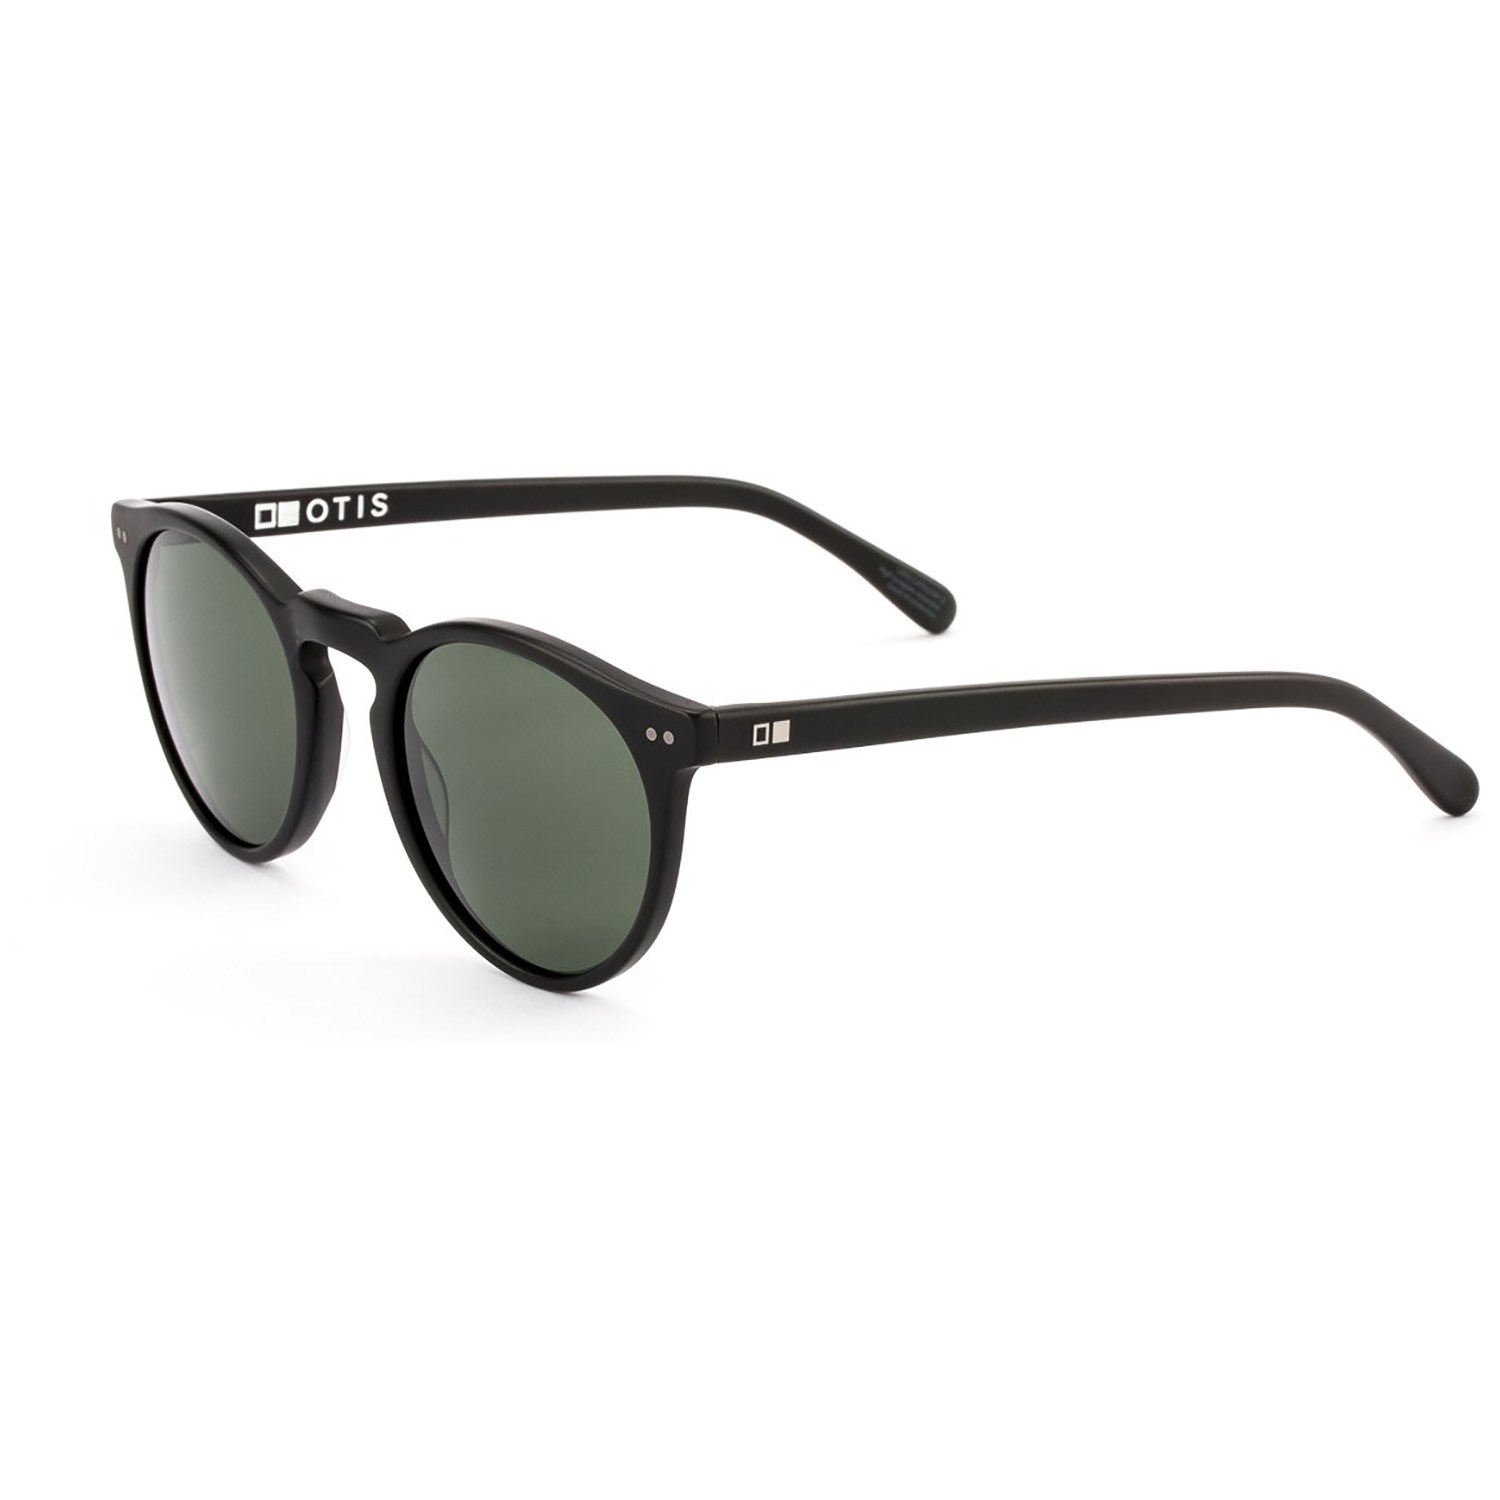 Солнцезащитные очки OTIS, черный жидкий чехол с блестками модный парень в очках на xiaomi redmi 5a сяоми редми 5а